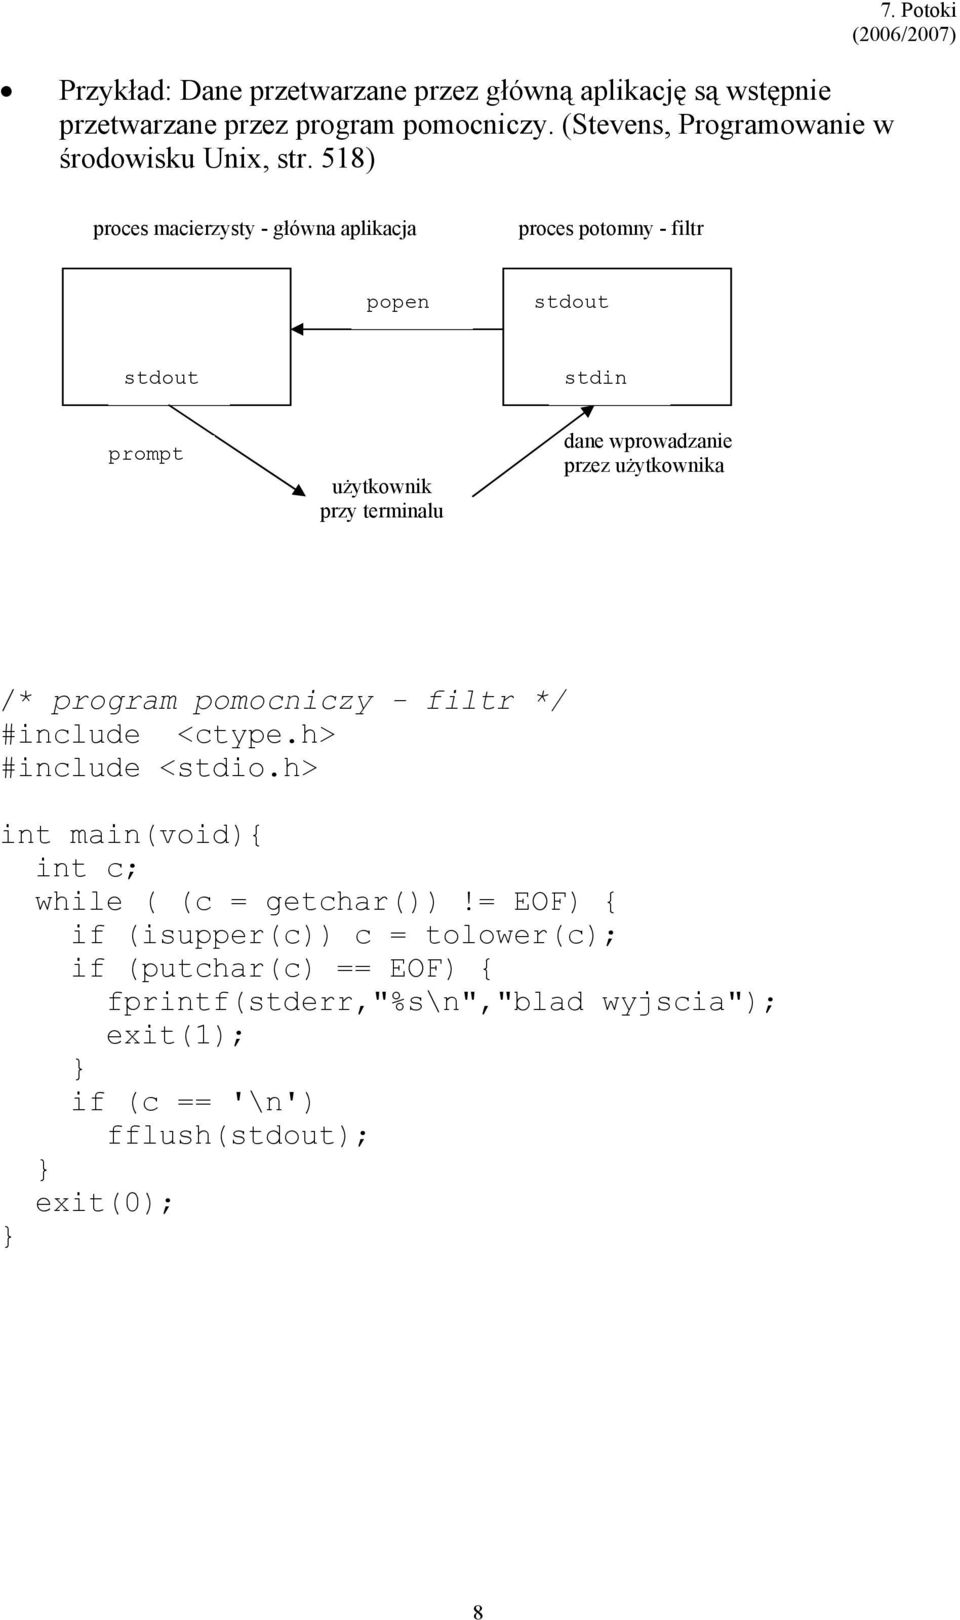 Potoki proces macierzysty - główna aplikacja proces potomny - filtr popen stdout stdout stdin prompt użytkownik przy terminalu dane